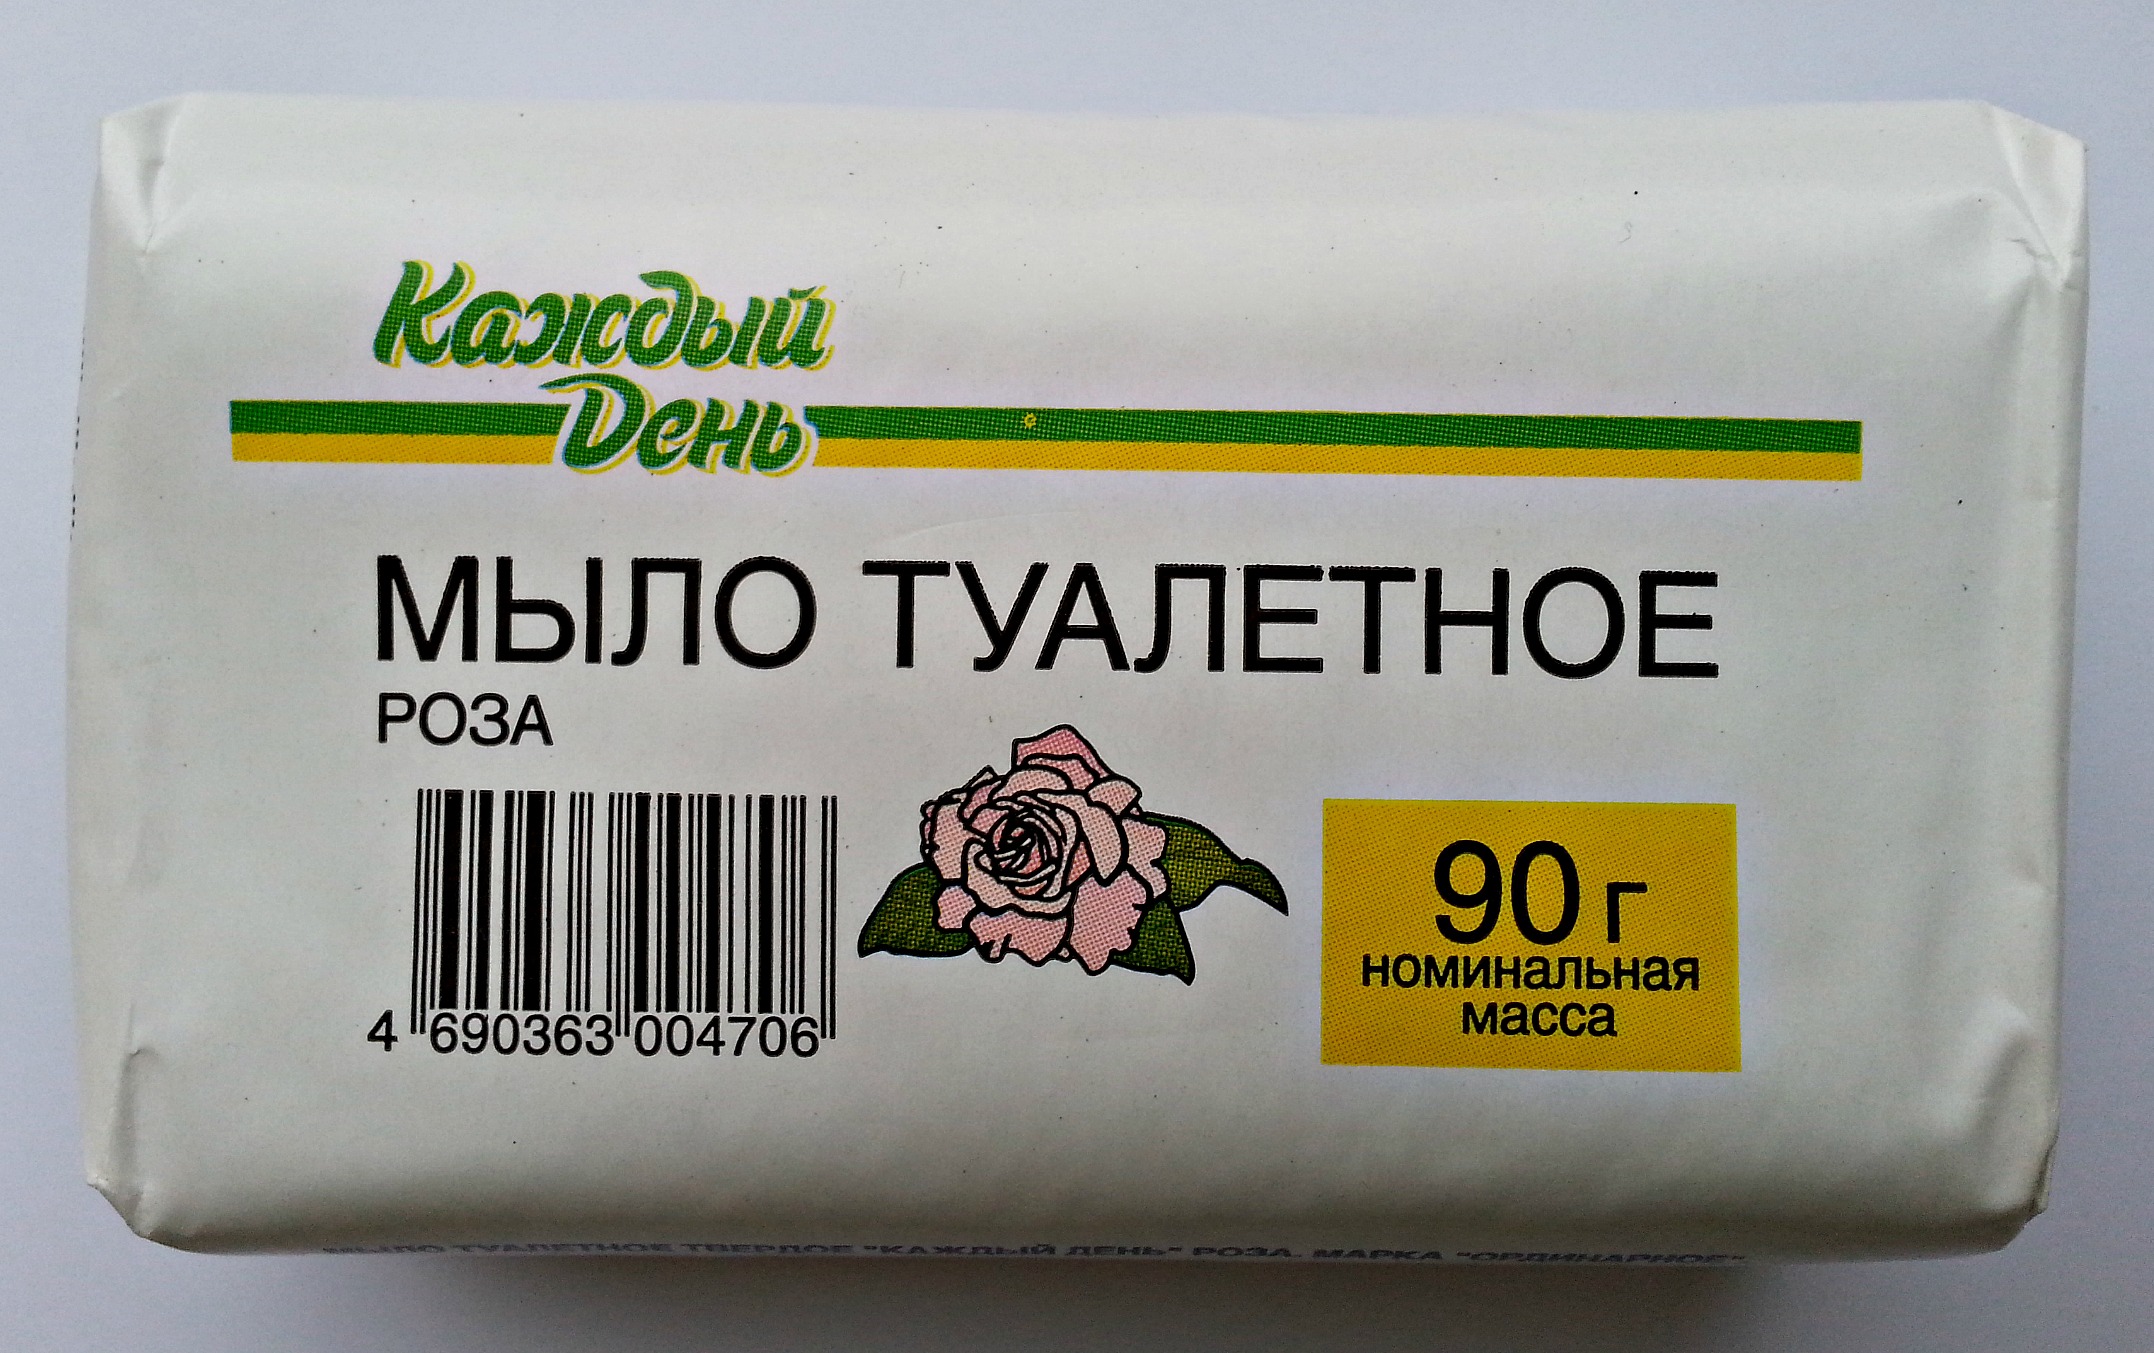 Где Купить Дешевое Мыло В Москве